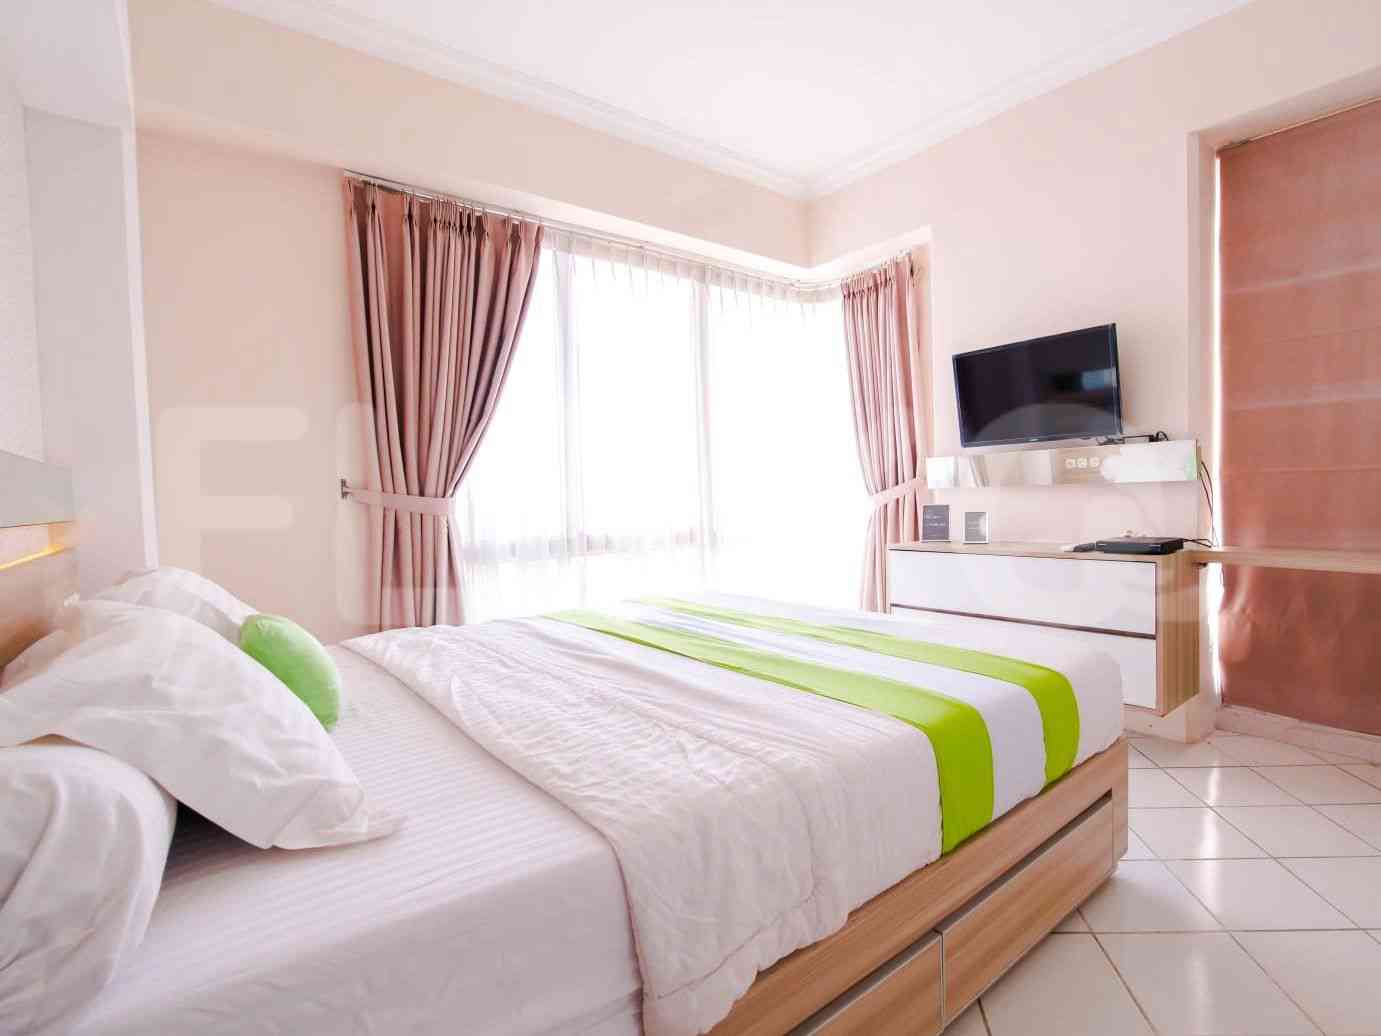 3 Bedroom on 21st Floor for Rent in Puri Casablanca - ftedf6 3